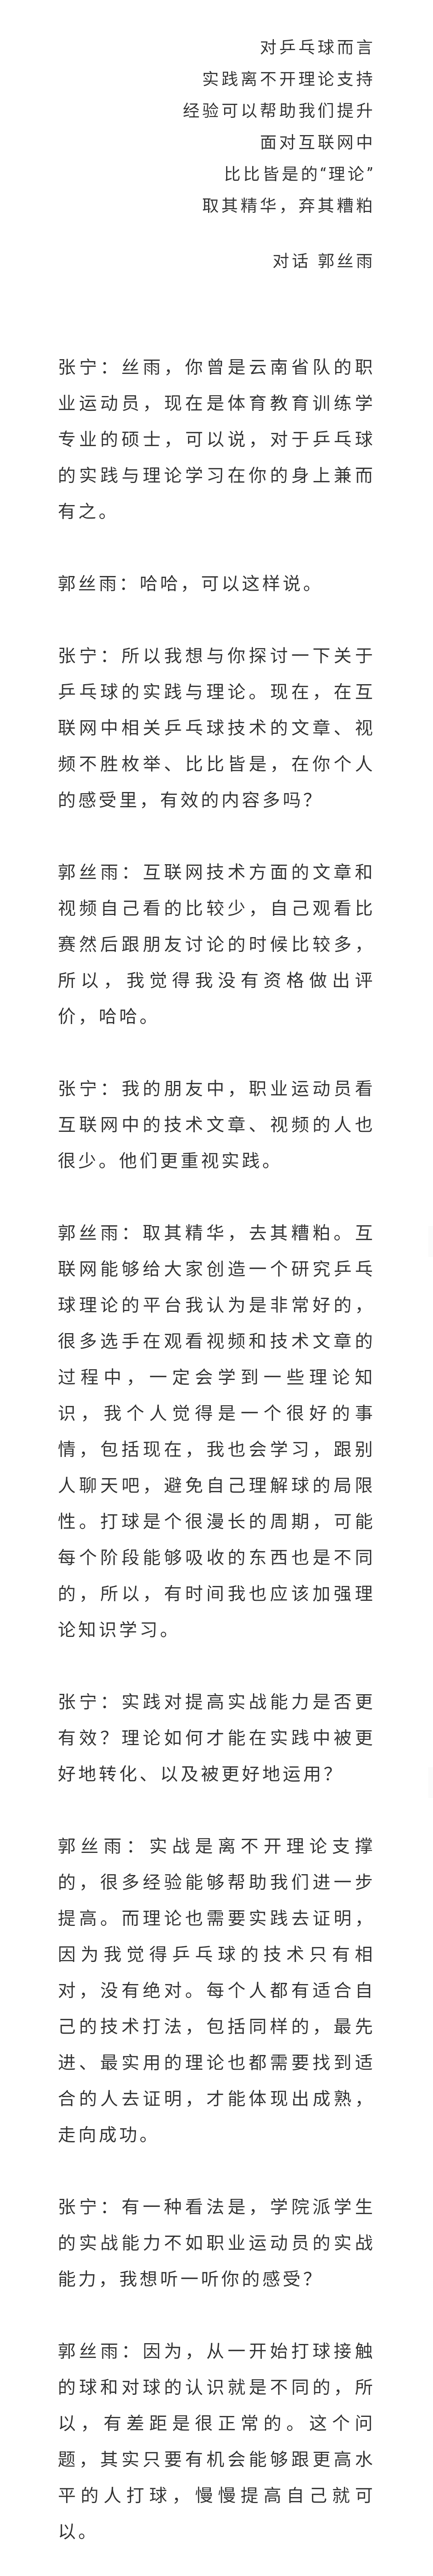 郭丝雨前云南省乒乓球队队员吉大研究生2021年度对话乒坛人